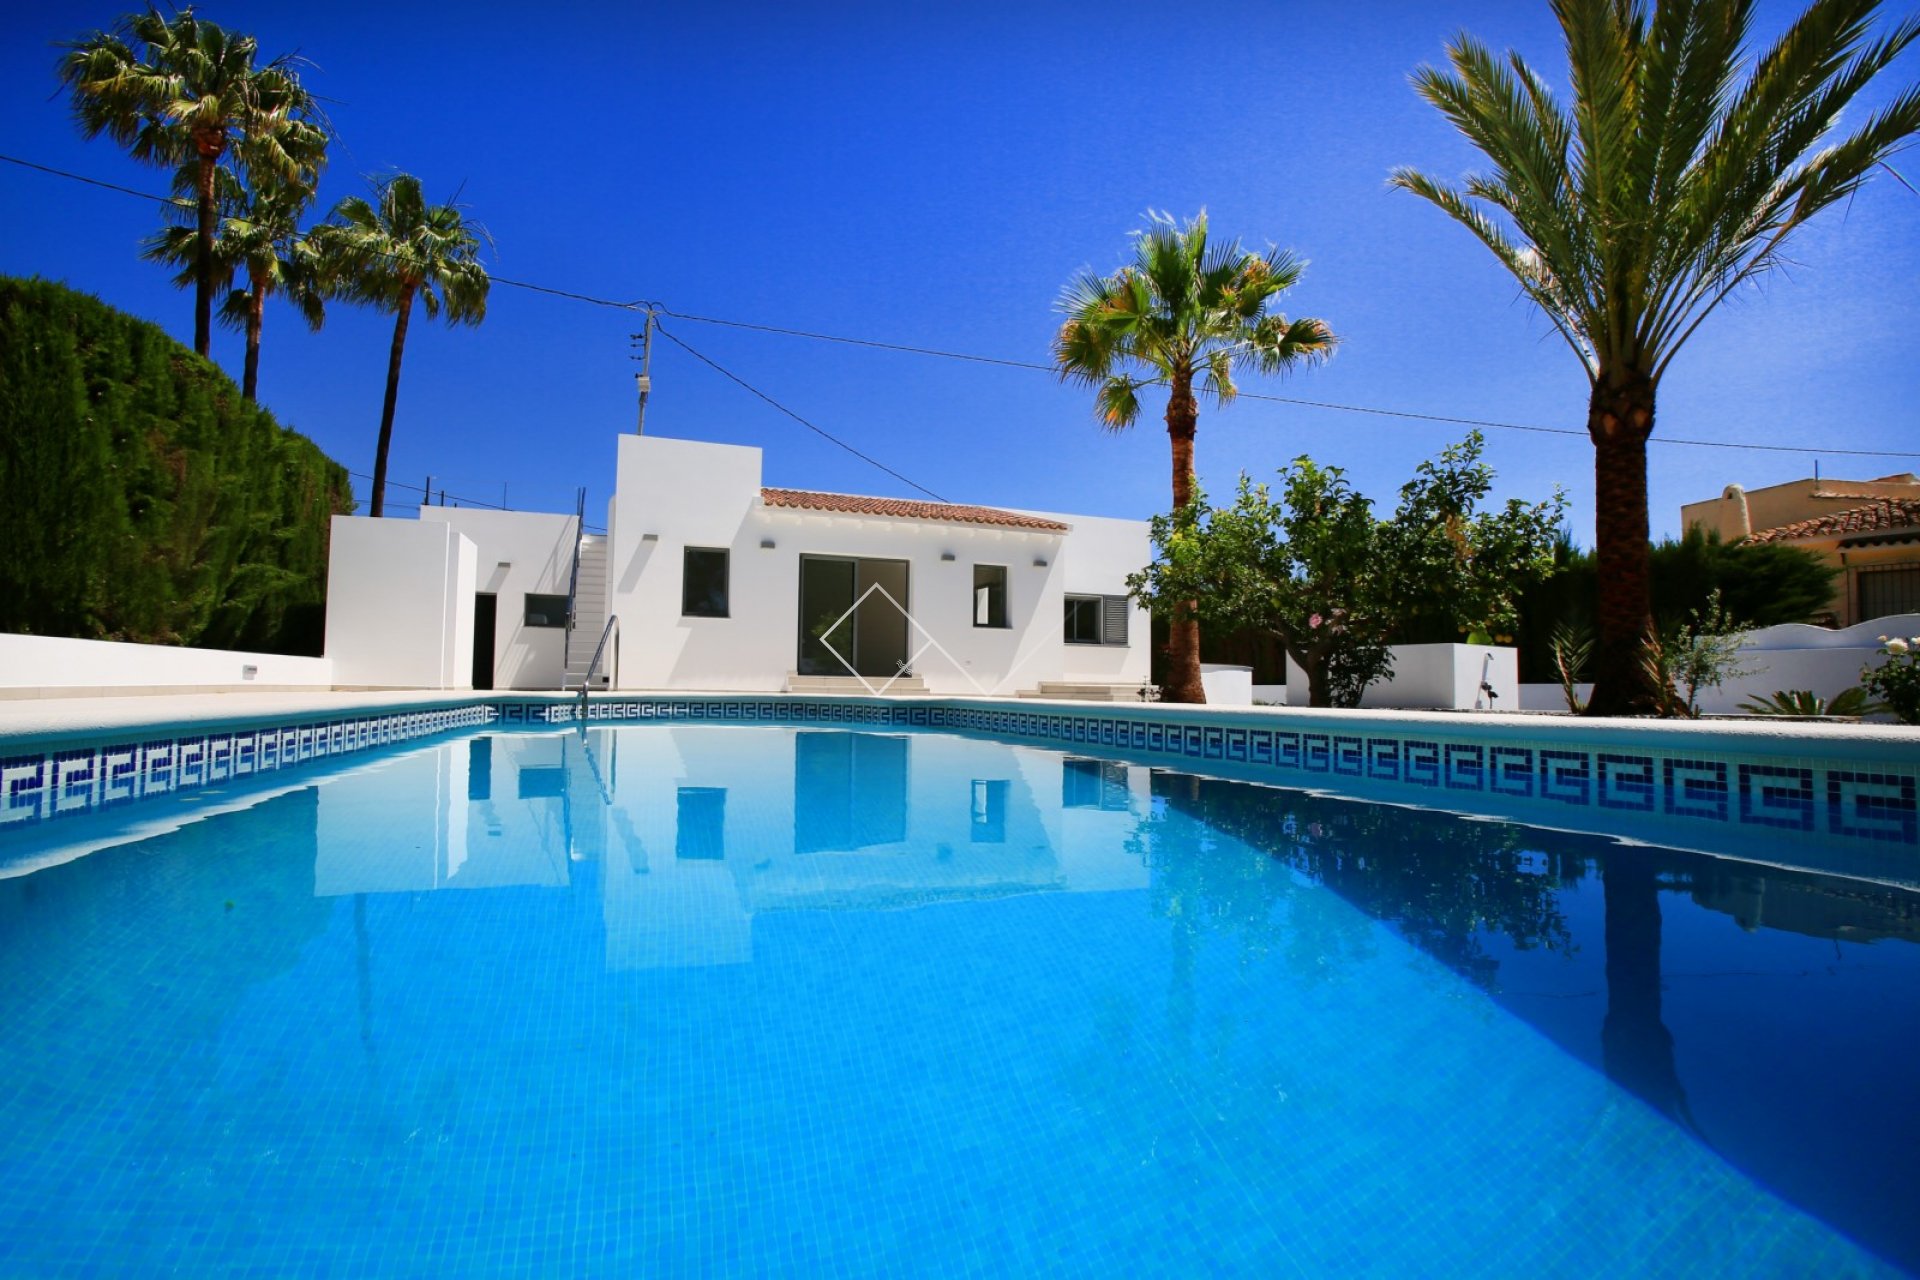 piscina palmeras - Villa reformada en venta en Benissa, a 200m de la playa